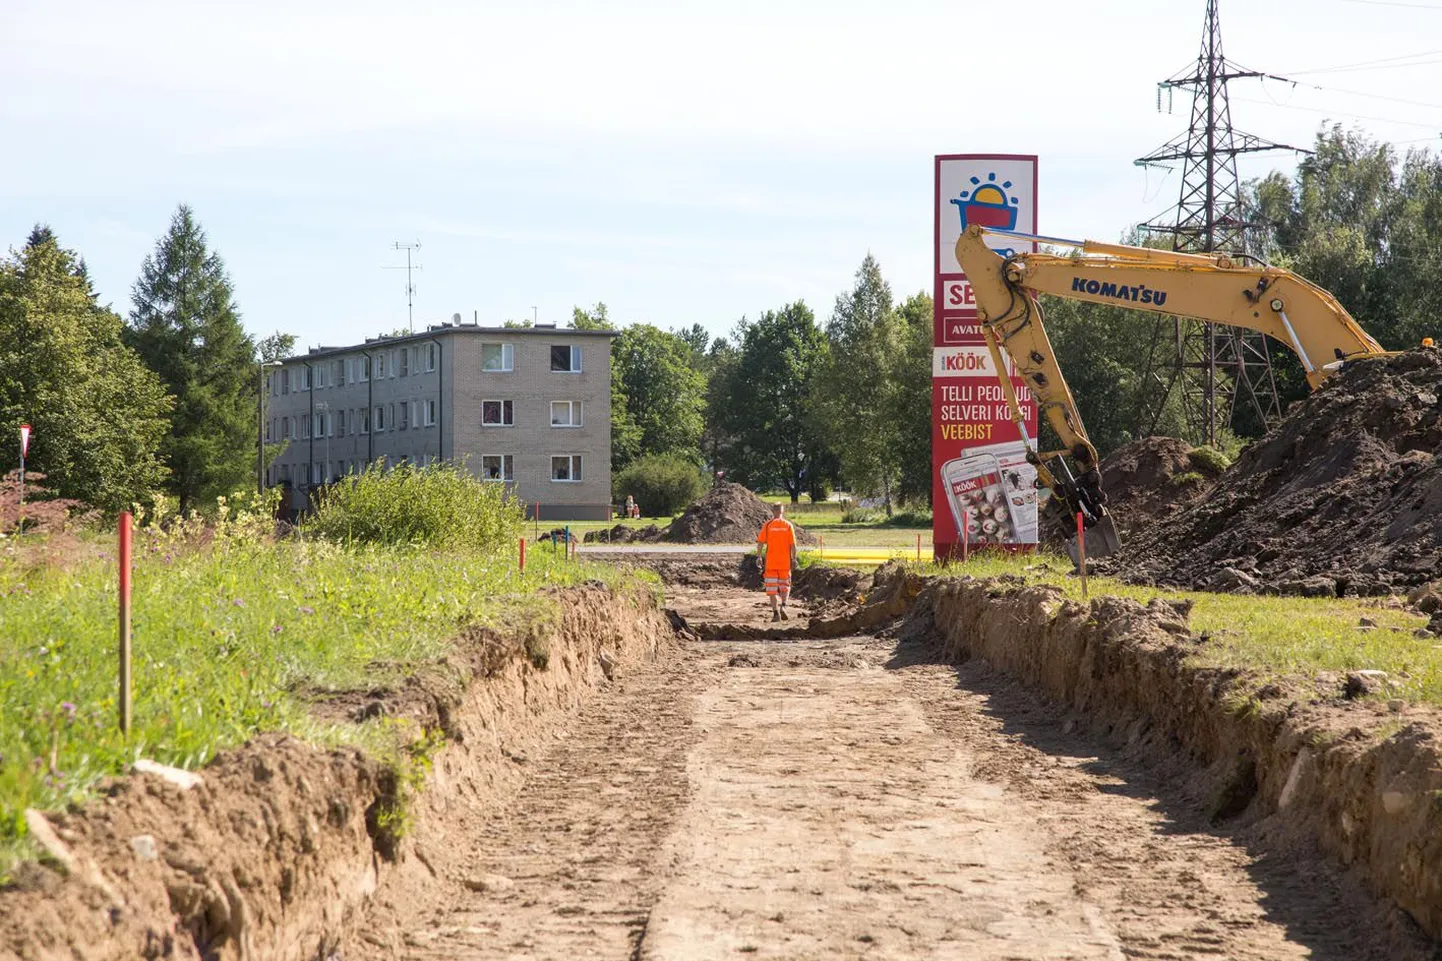 Paide Pärnu tänava kõnniteed ja Reopalu–Türi kergliiklusteed ühendama hakkava uue kergliiklustee ehitus käib täie hooga. Uus teelõik saab valmis septembris.